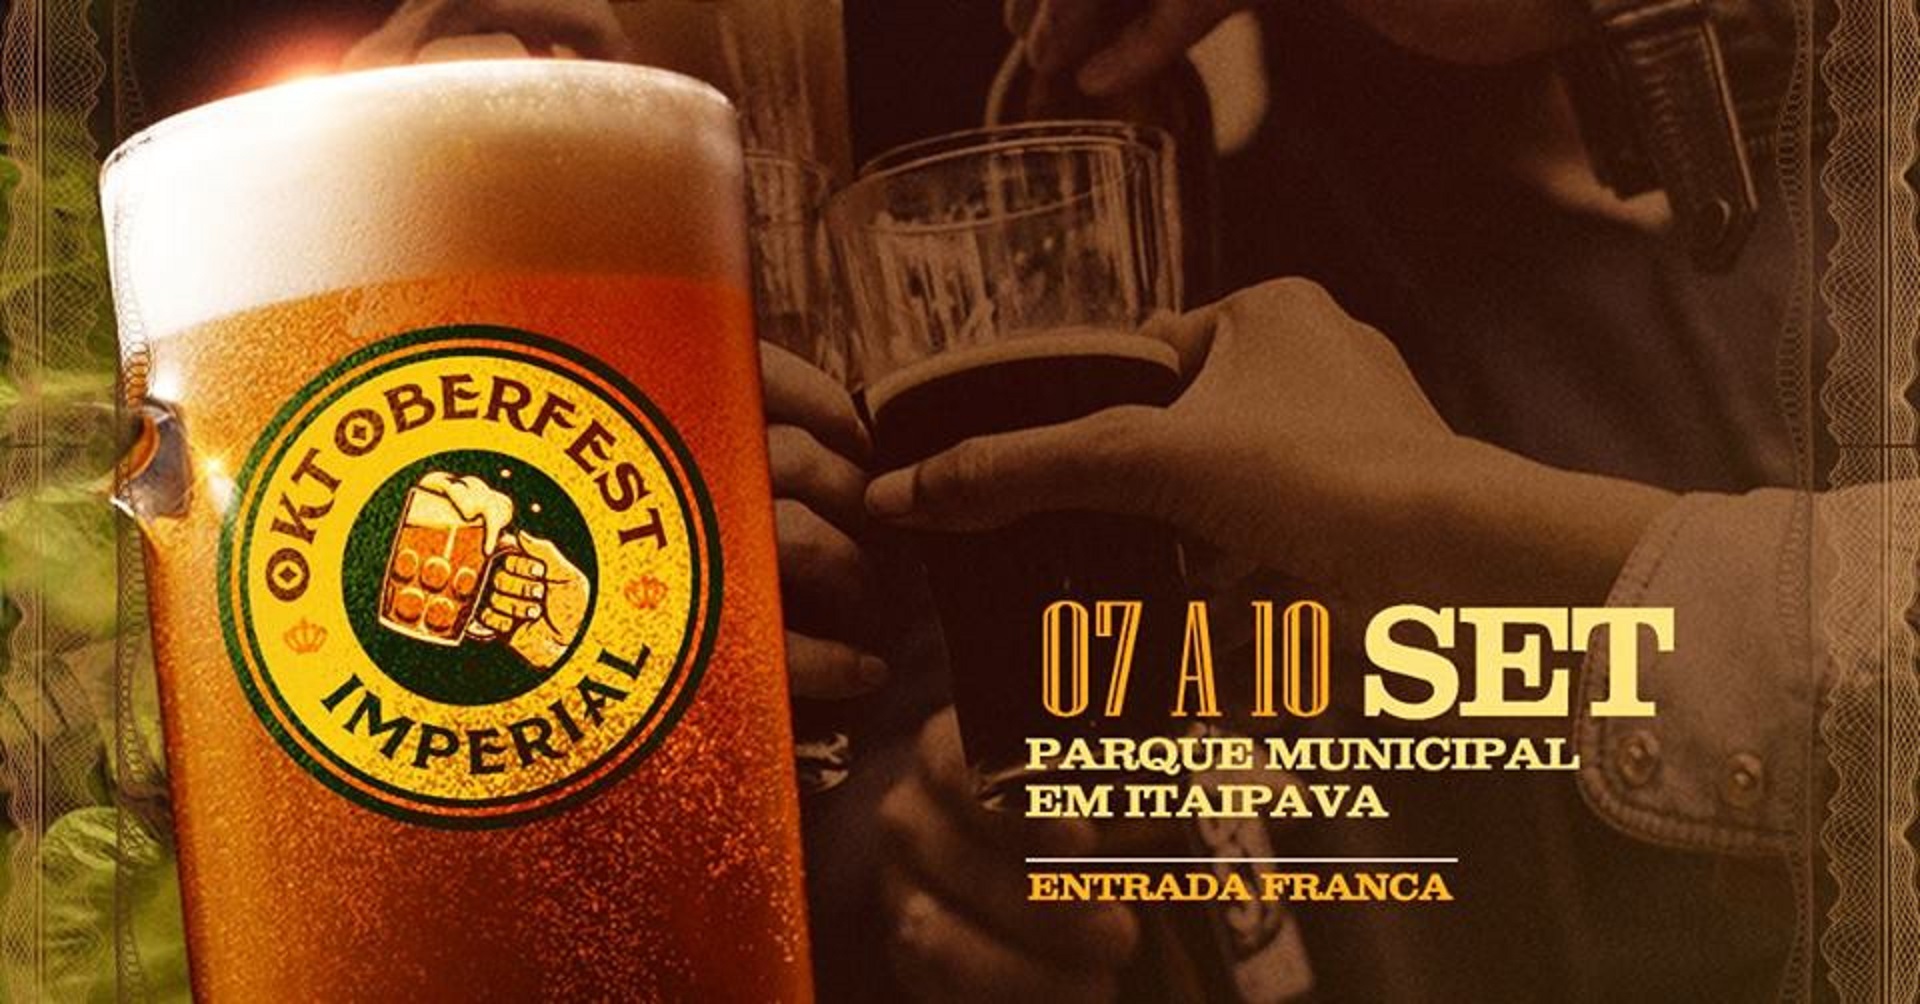 Oktoberfest Imperial promete muitas atrações em Petrópolis